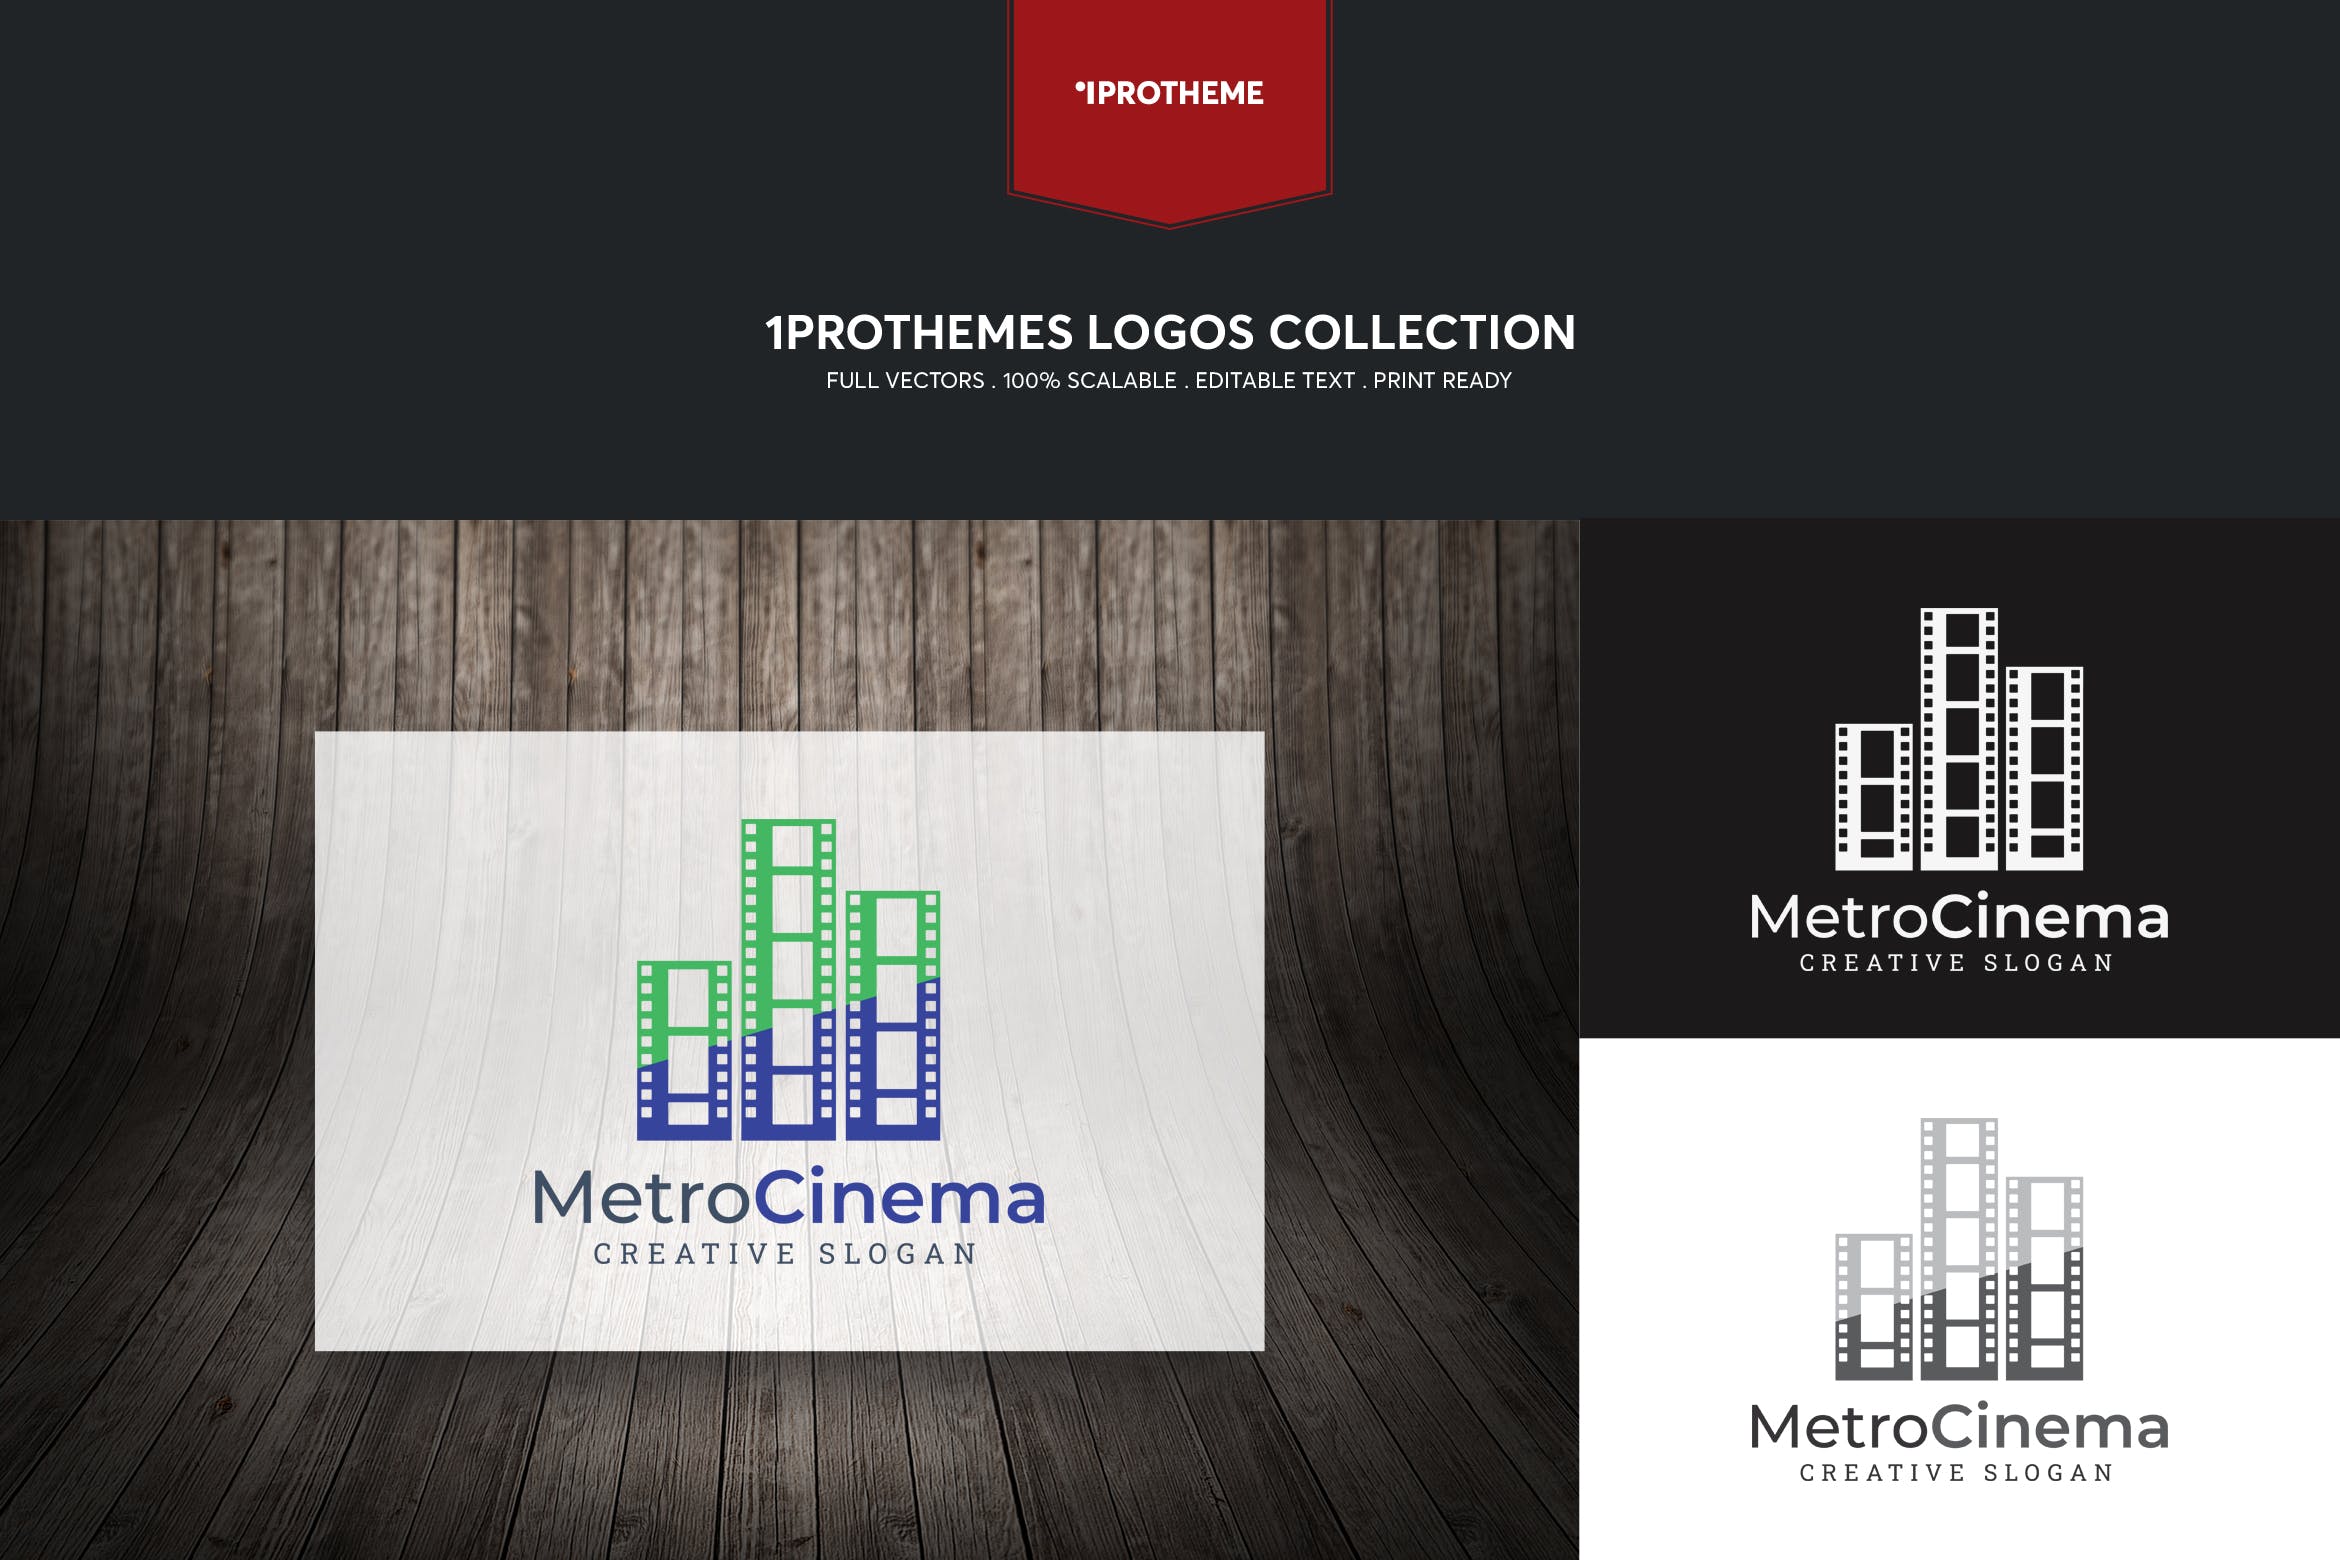 电影公司/影院品牌Logo设计蚂蚁素材精选模板 Metro Cinema Logo Template插图